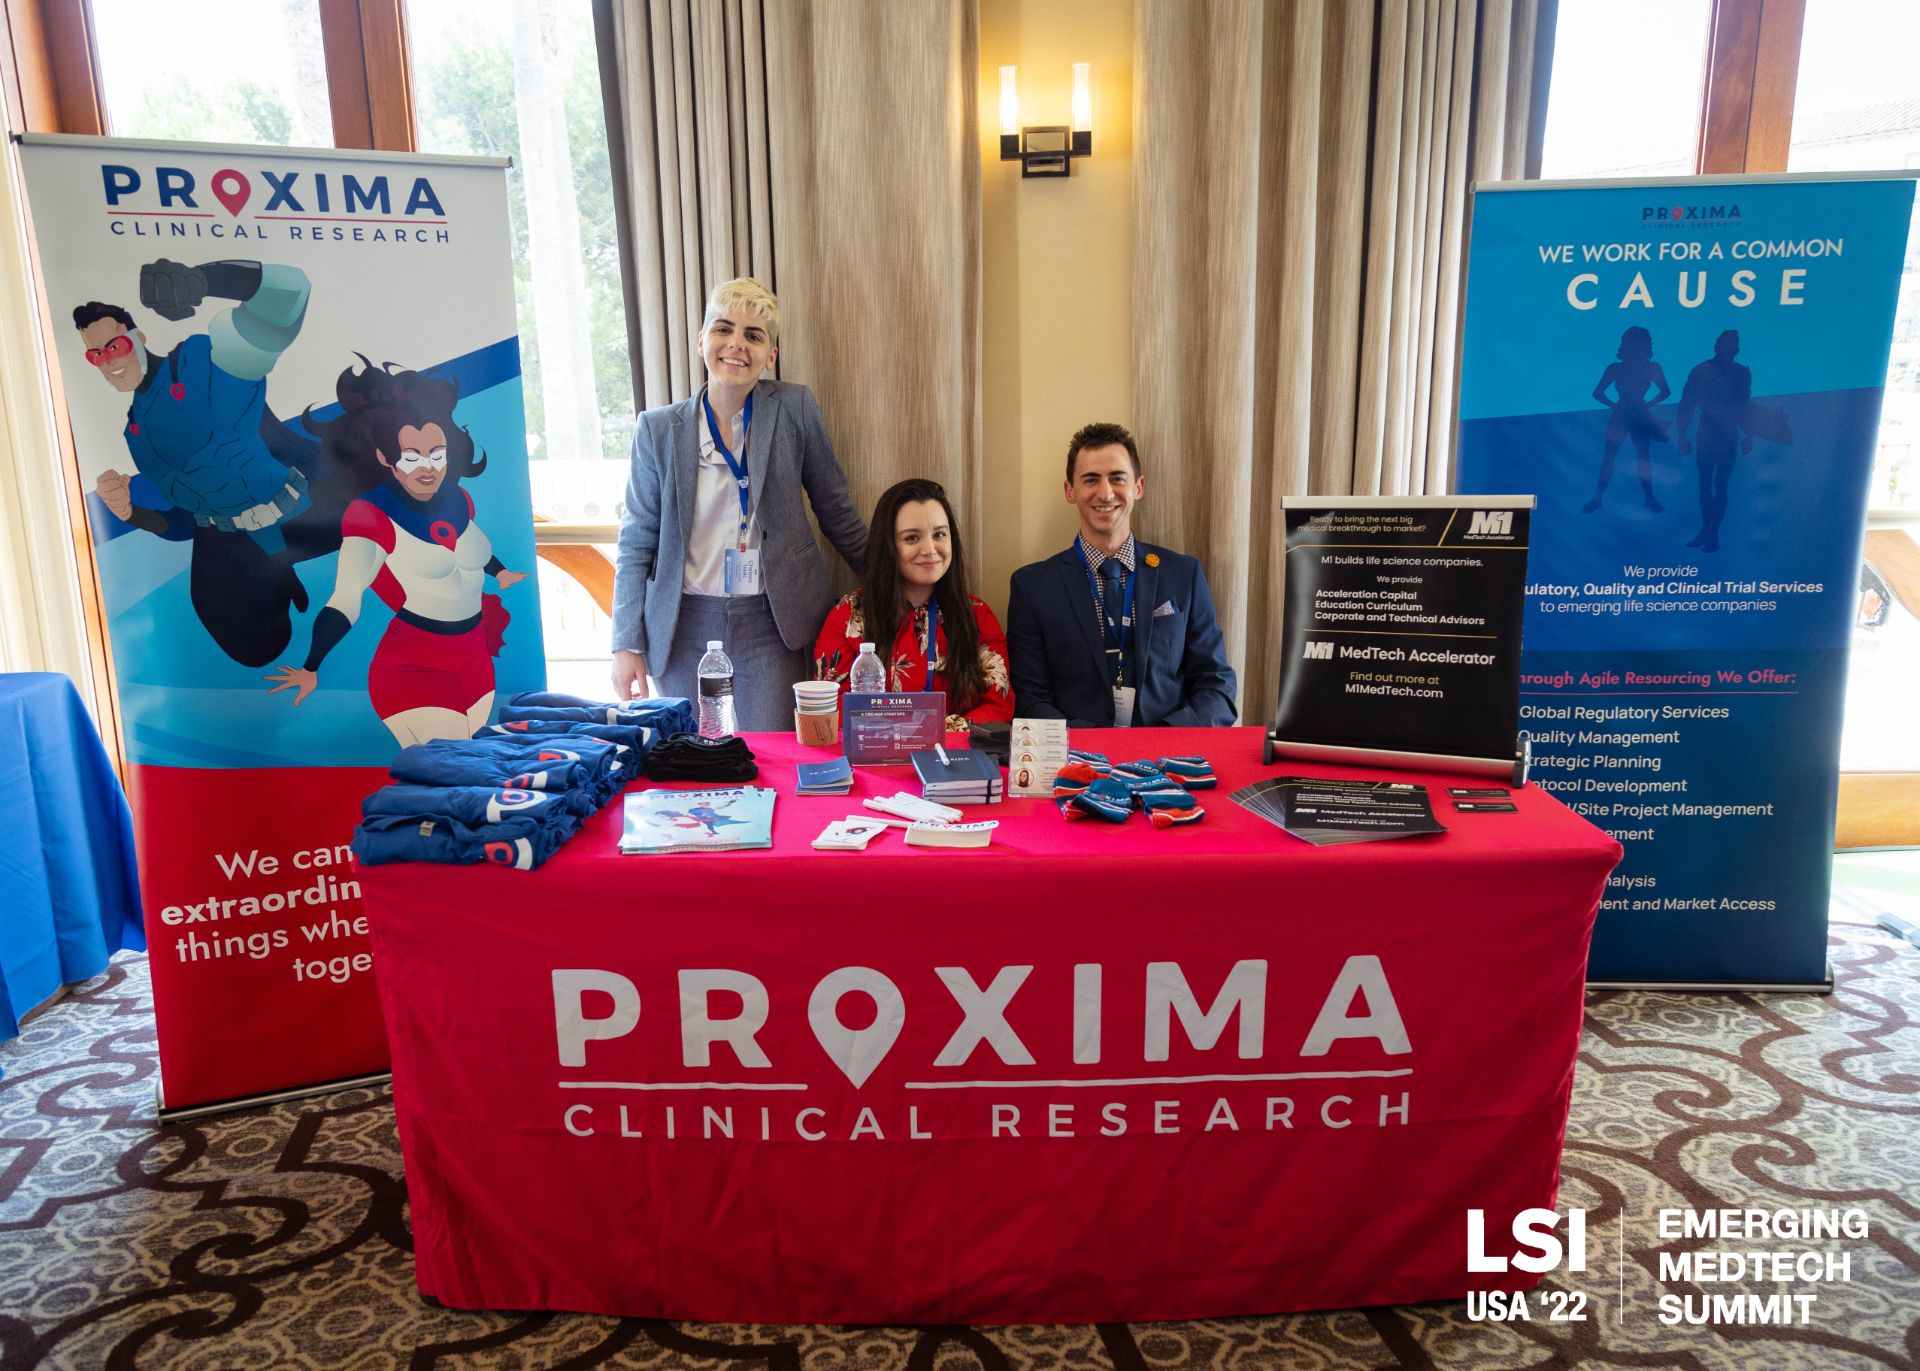 Proxima Clinical Research | Chelsea Isaac, Isabella Schmitt, Sean Bittner